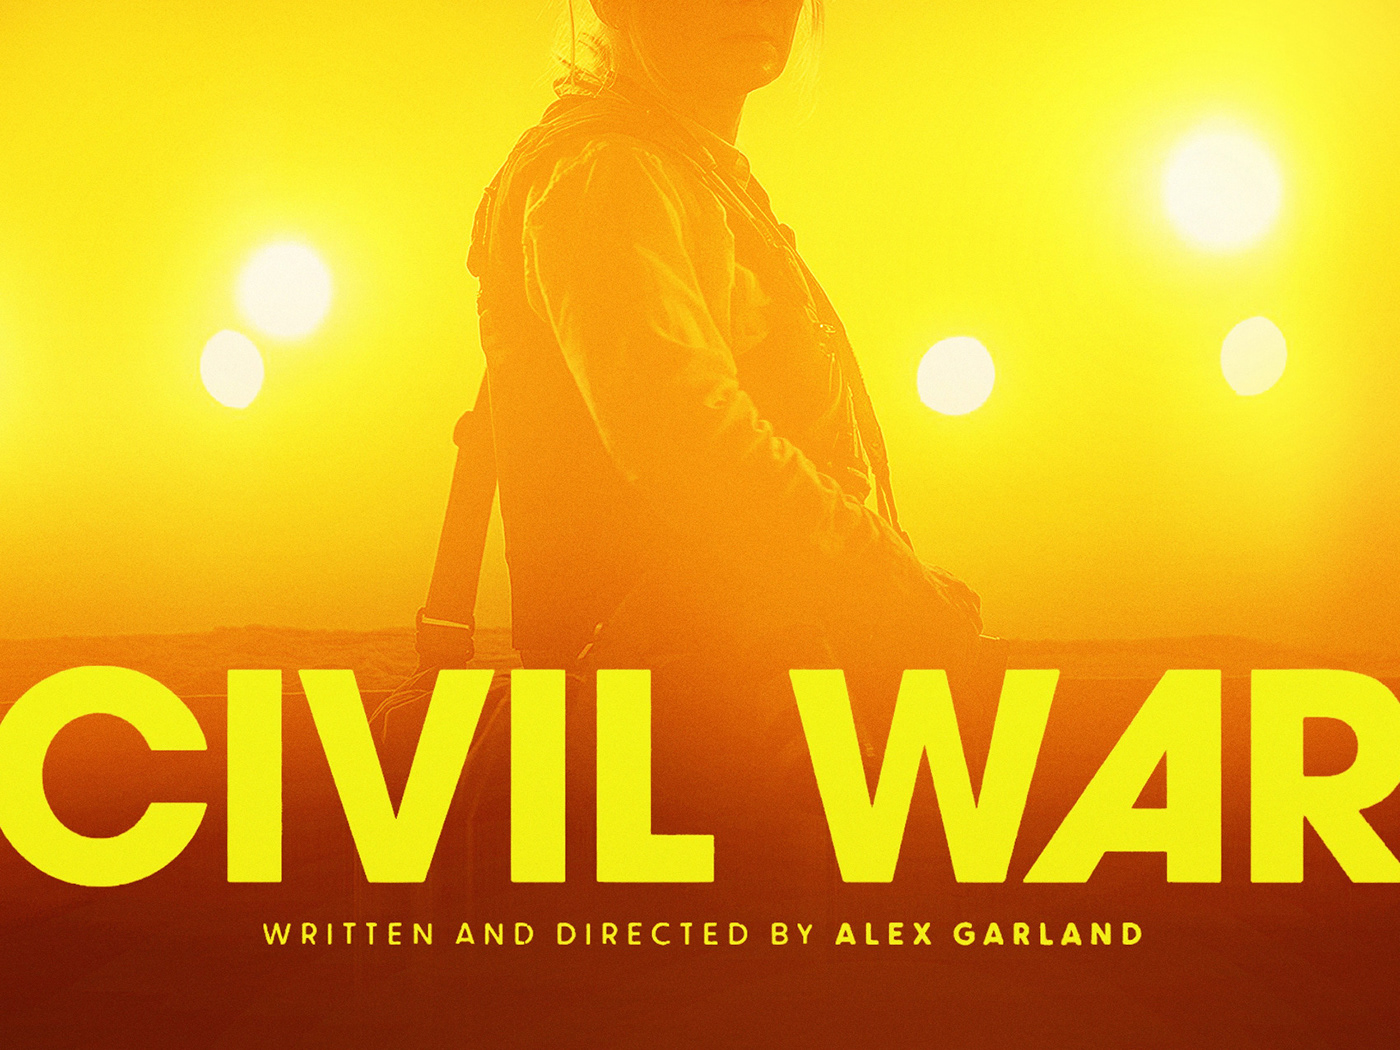 Alternative movie poster for Alex Garland’s ‘Civil War’.
